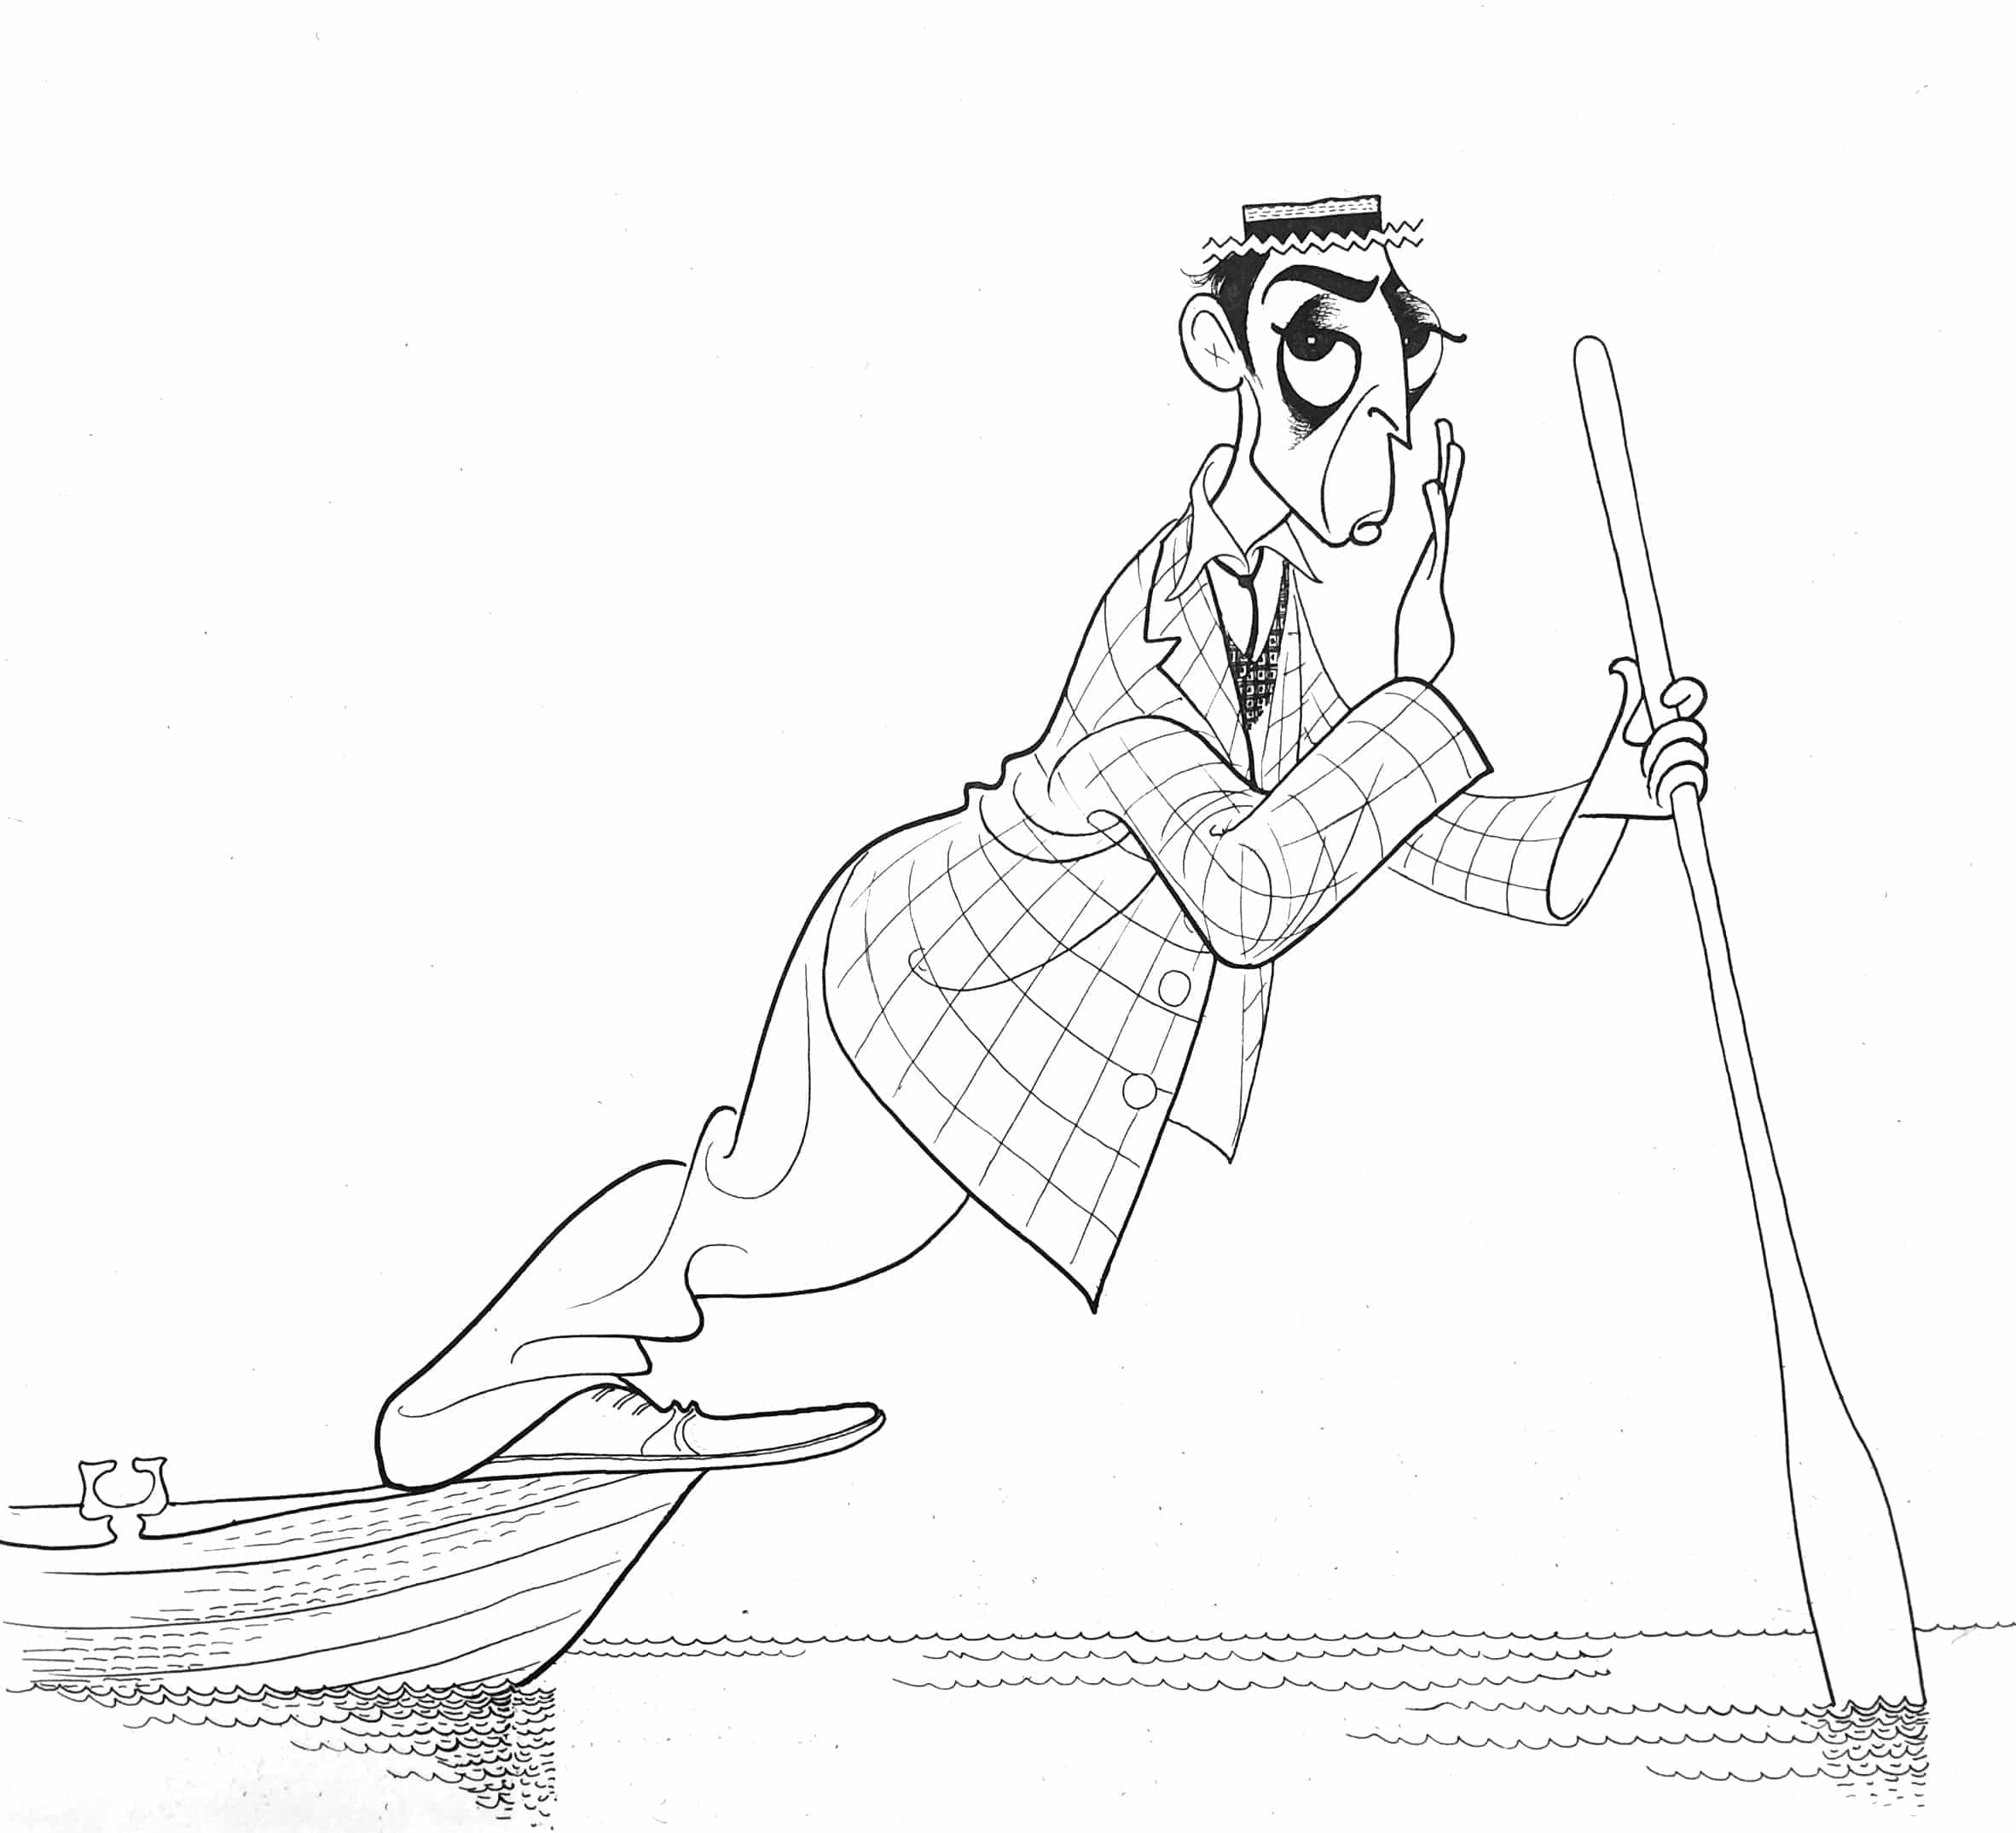 Buster Keaton by Al Hirschfeld